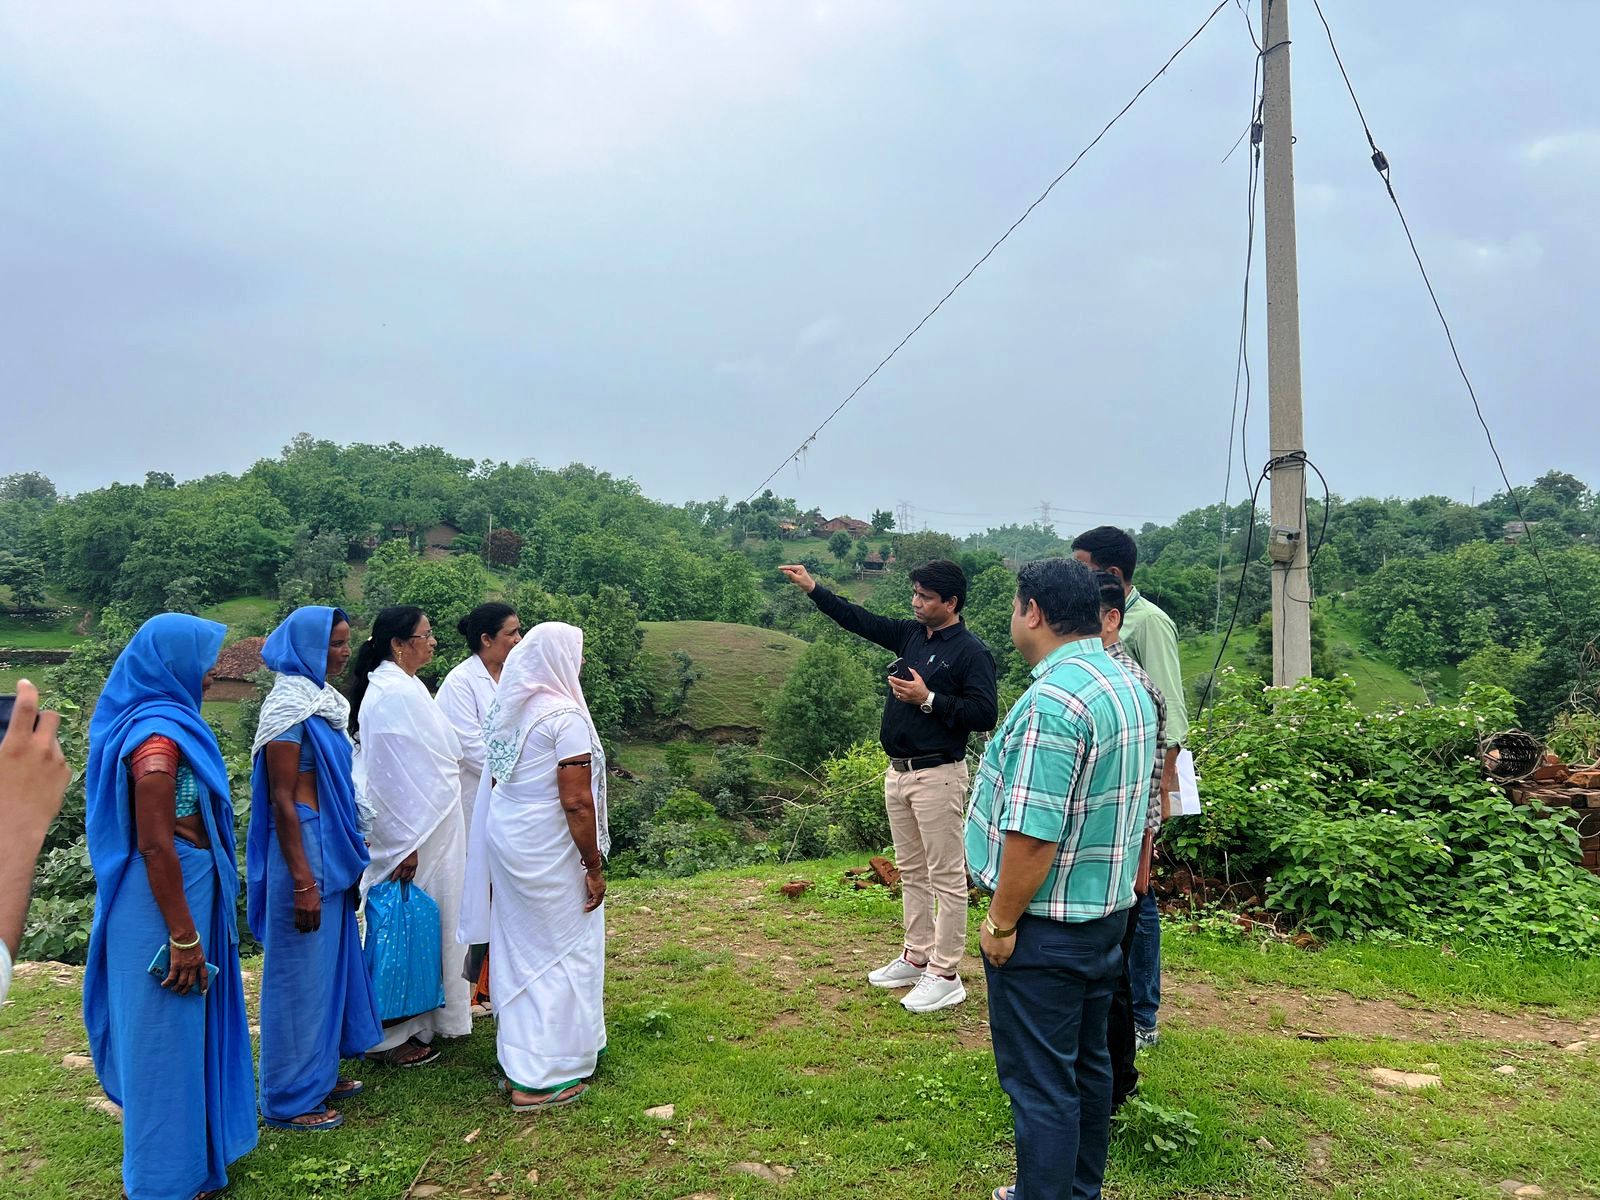 चांदीपुरा वायरस : सीएमएचओ ने किया हाई अलर्ट क्षेत्र का दौरा